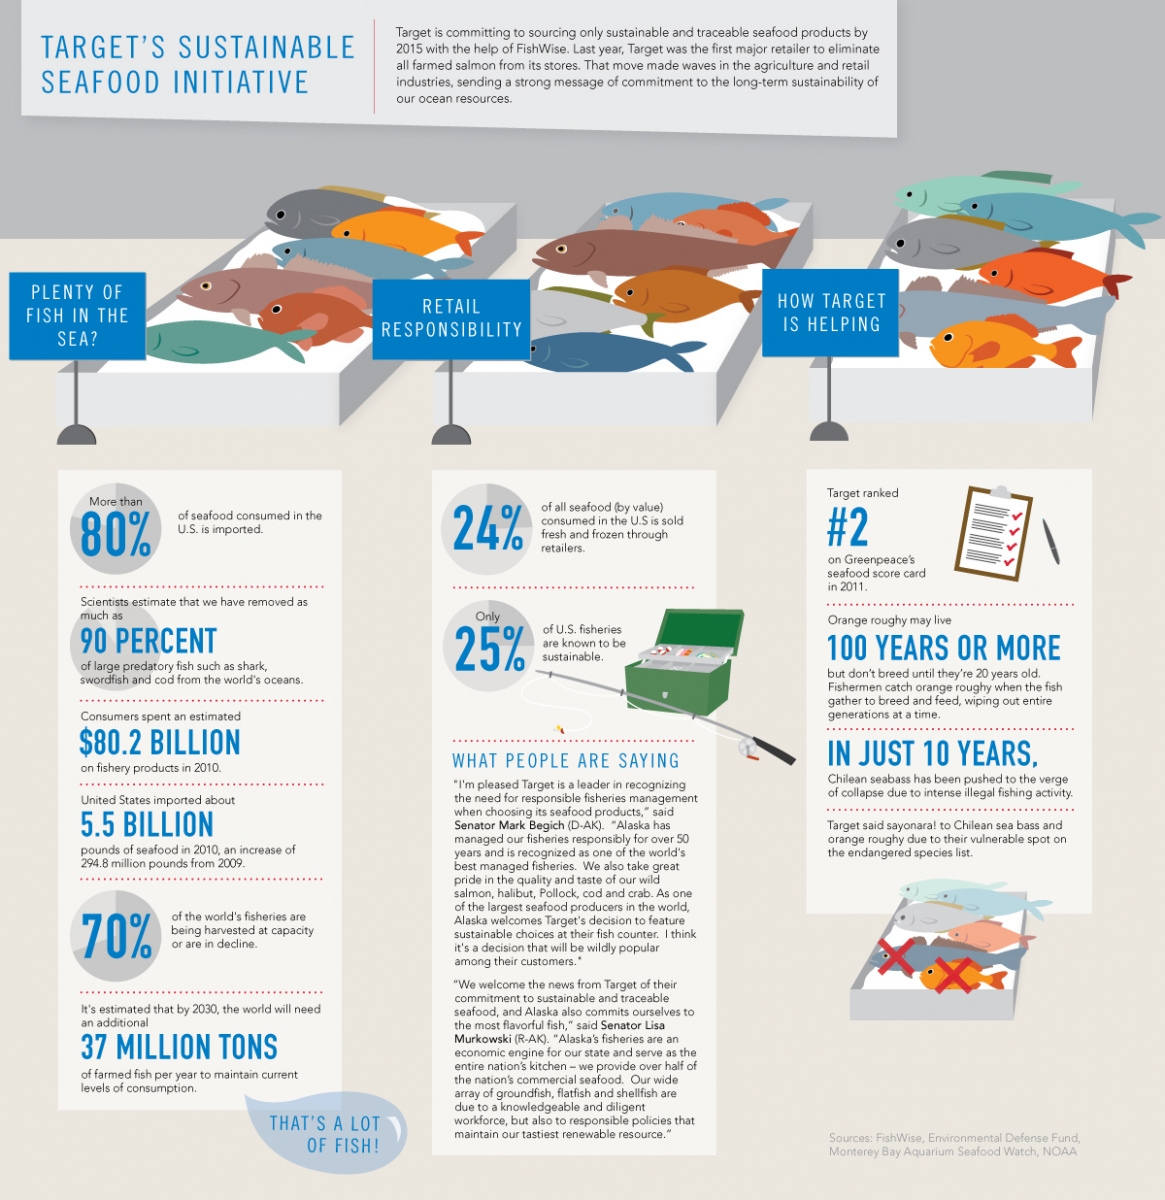 ตัวอย่างการสื่อสารเรื่องความสำคัญและการดำเนินงานด้านการตรวจสอบย้อนกลับ (traceability) ของอาหารทะเลของบริษัท Target ที่มาภาพ: http://www.sustainablebrands.com/news_and_views/articles/target-commits-100-sustainable-seafood-2015-infographic